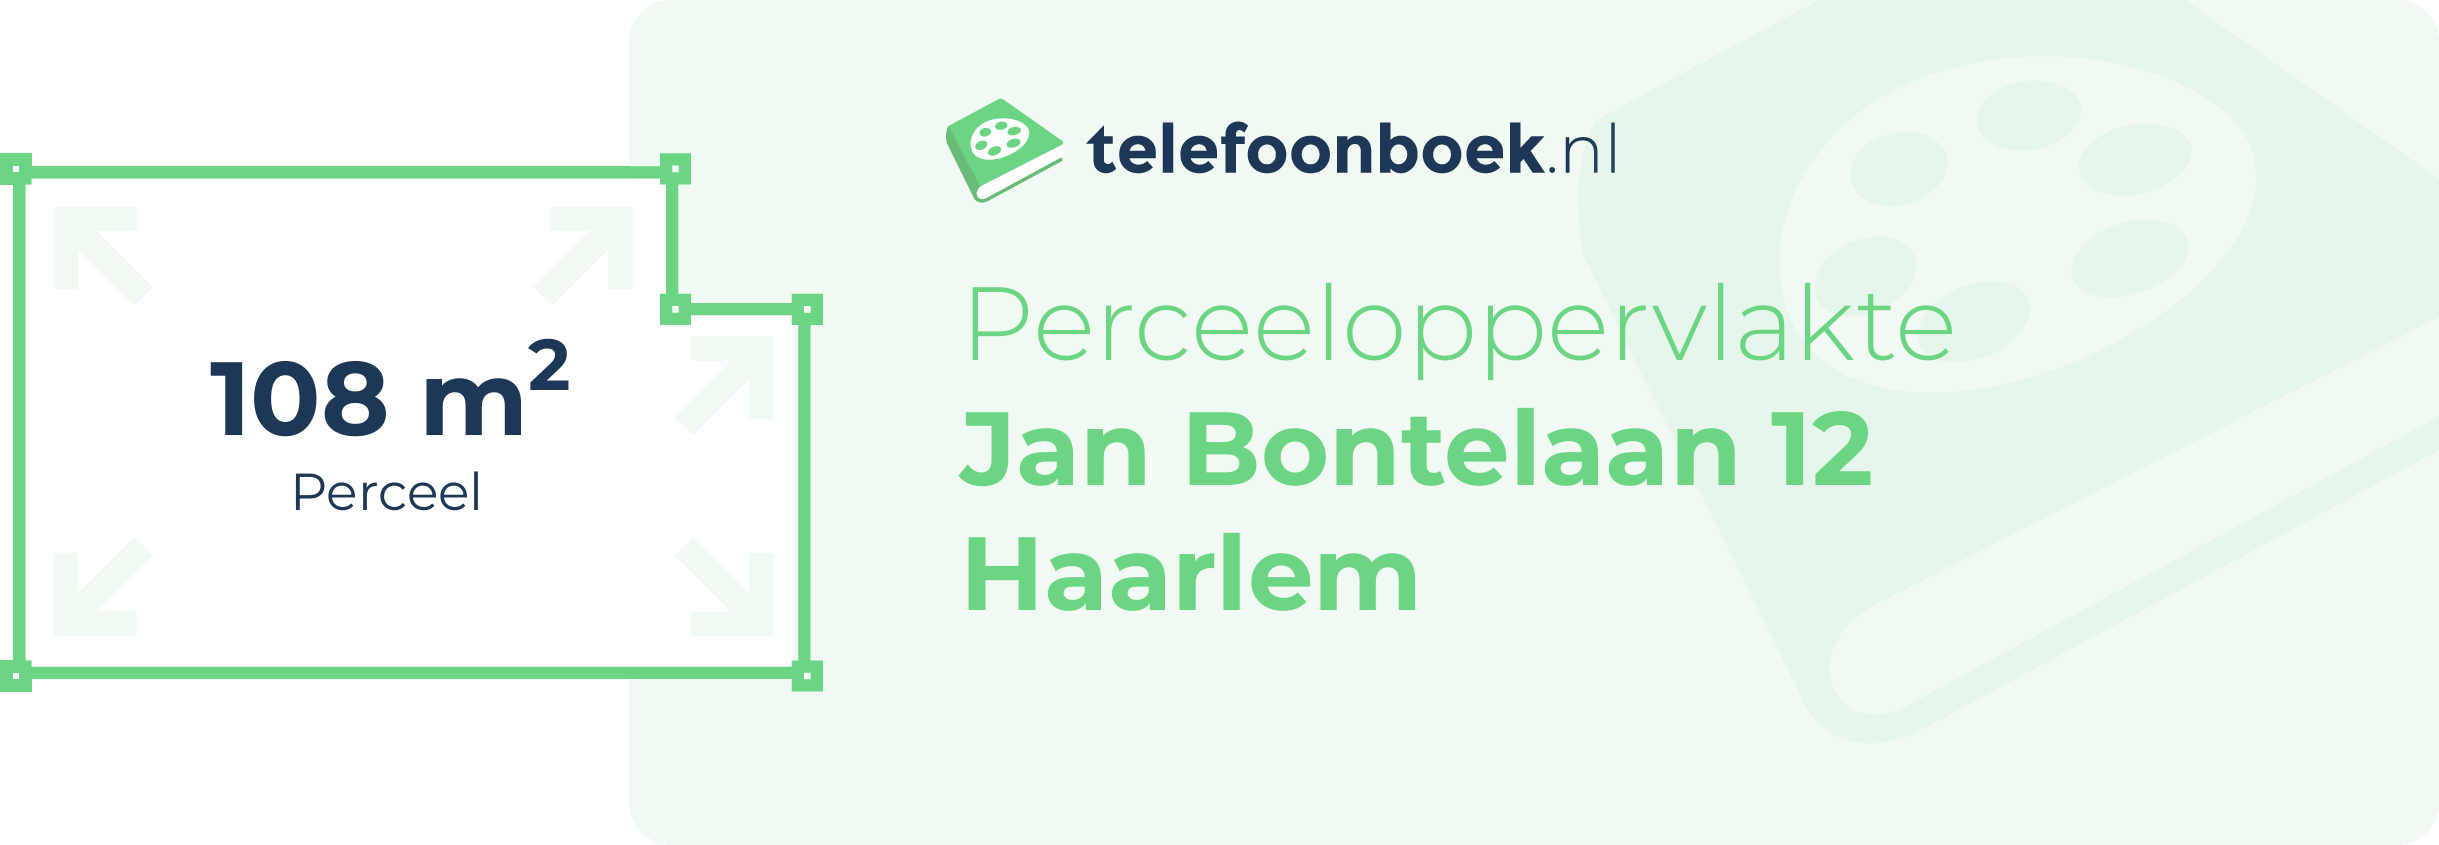 Perceeloppervlakte Jan Bontelaan 12 Haarlem